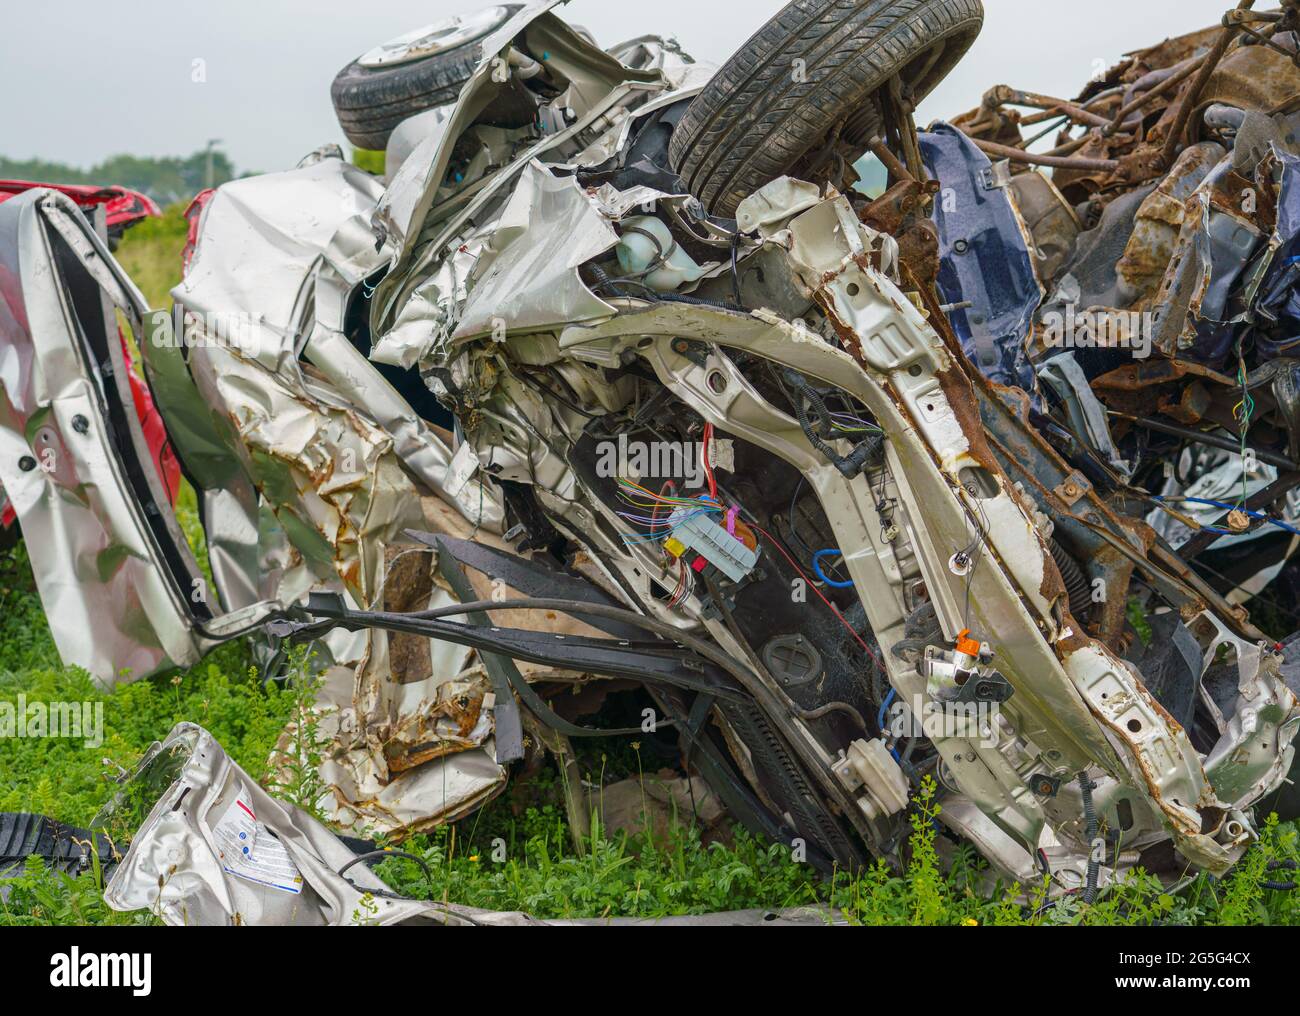 Die zerquetschten Überreste eines Autos, nachdem ein Armeepanzer absichtlich darüber gefahren ist und nur noch Schrott hinterlassen hat Stockfoto